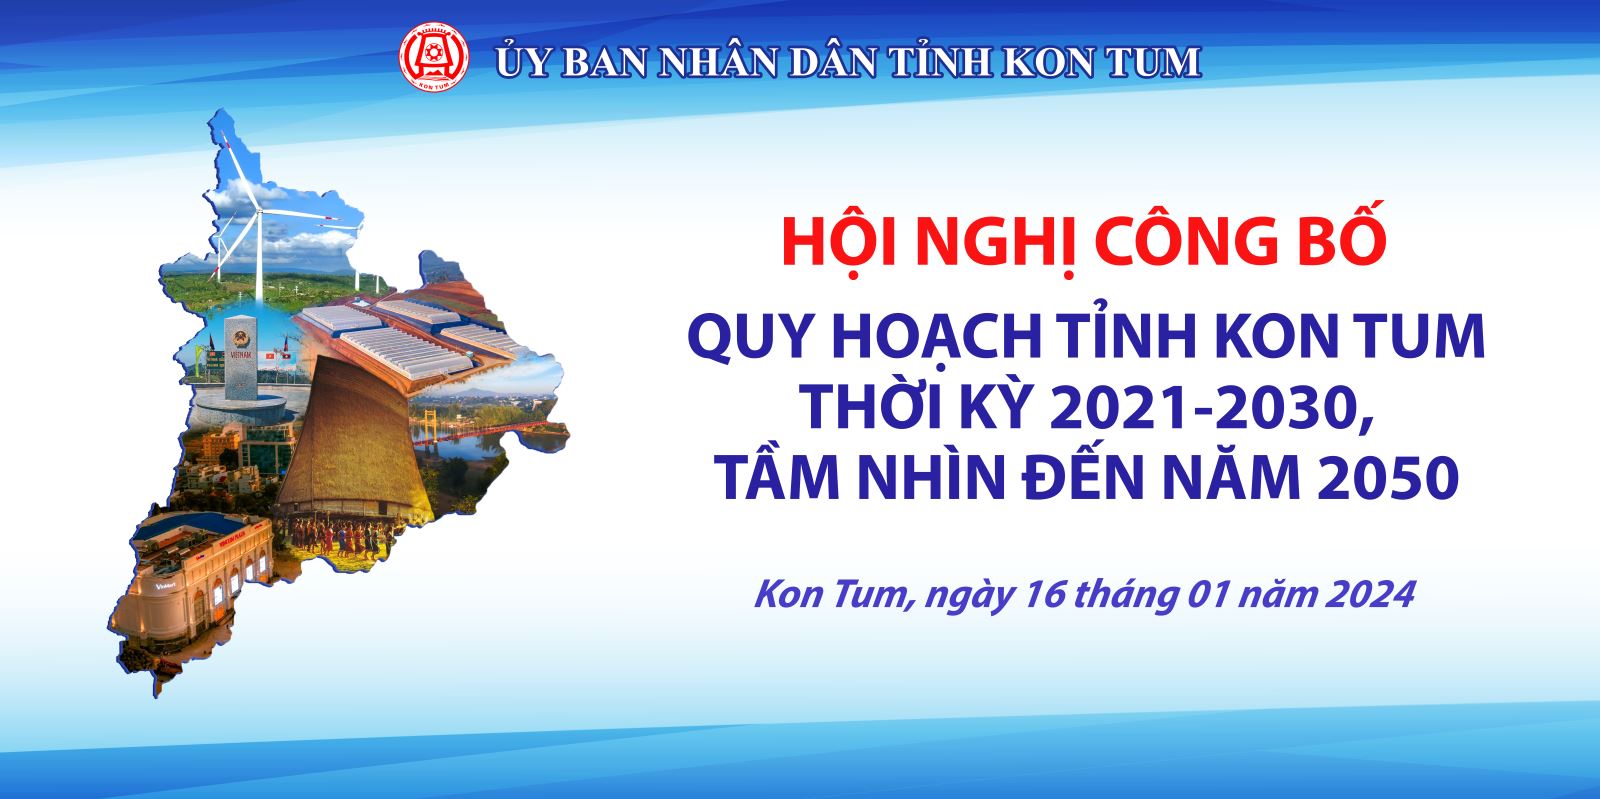 Hội nghị công bố Quy hoạch tỉnh Kon Tum thời kỳ 2021 - 2030, tầm nhìn đến năm 2050